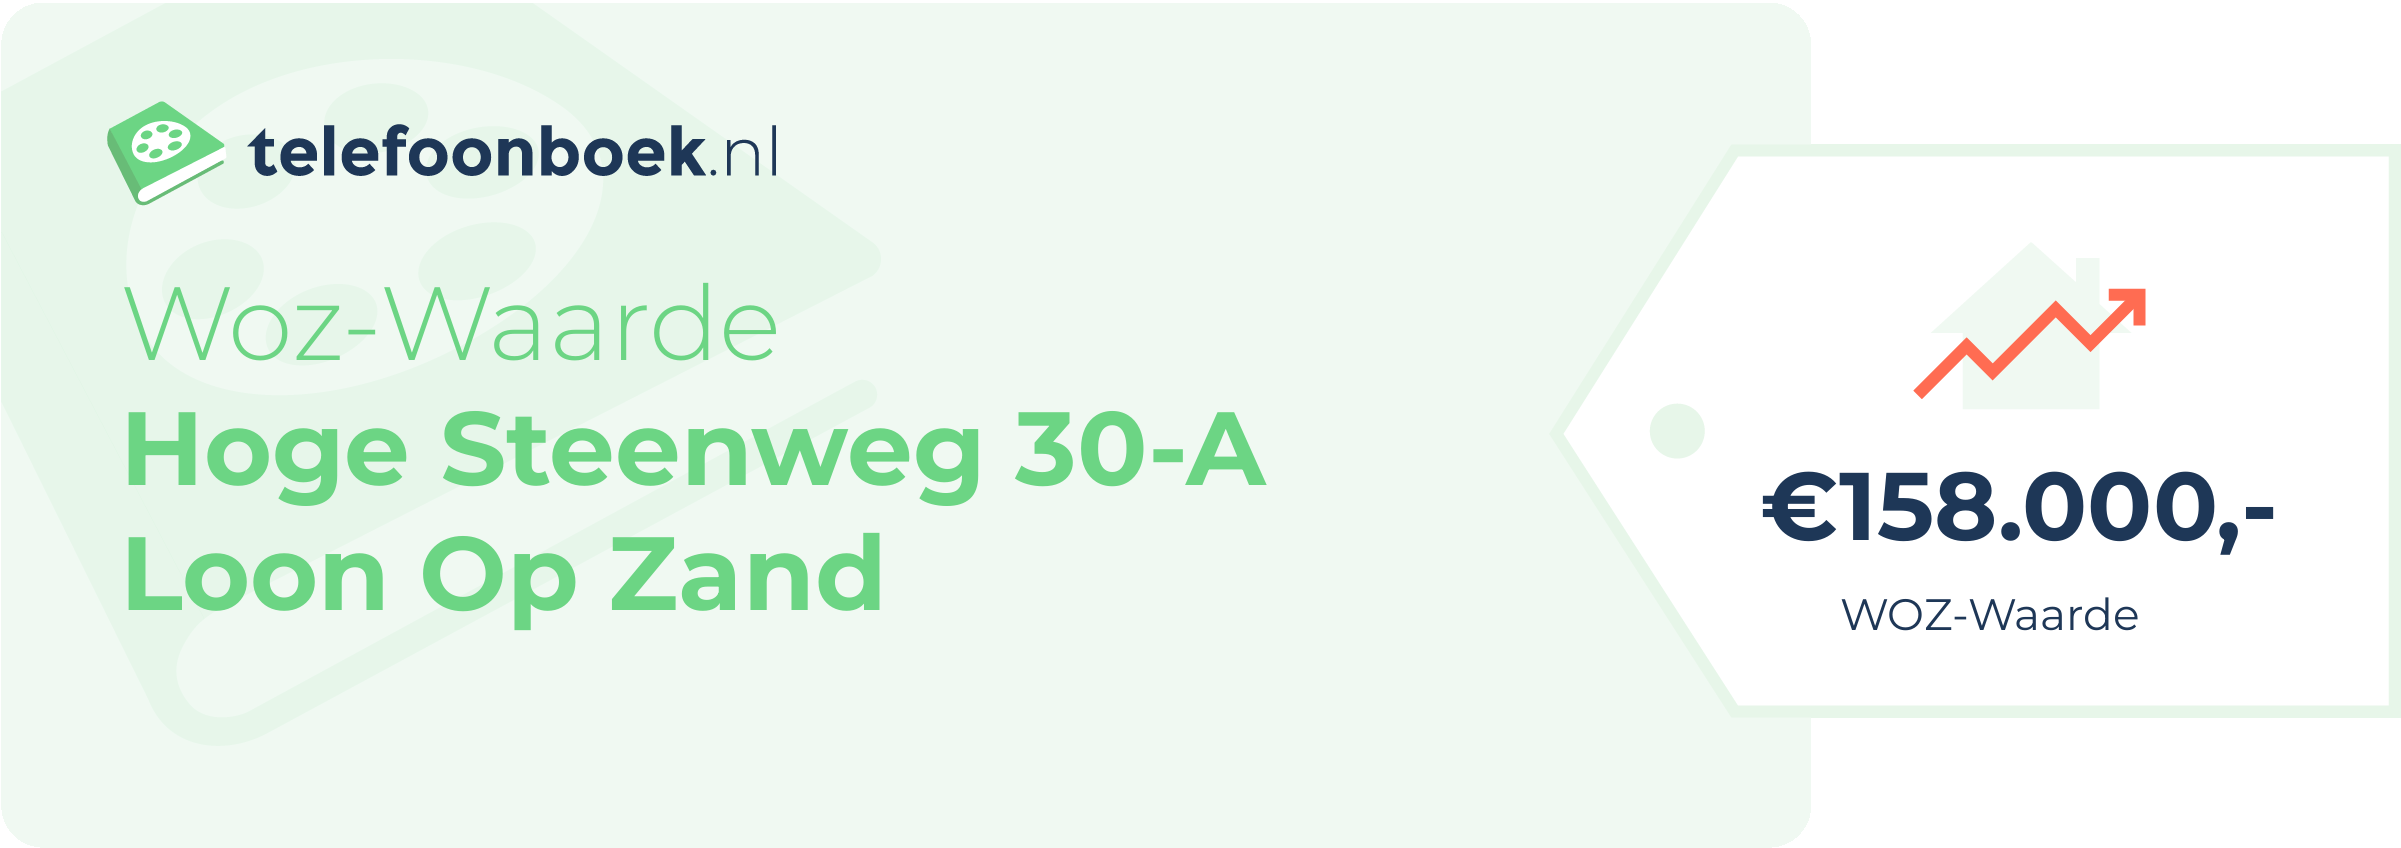 WOZ-waarde Hoge Steenweg 30-A Loon Op Zand